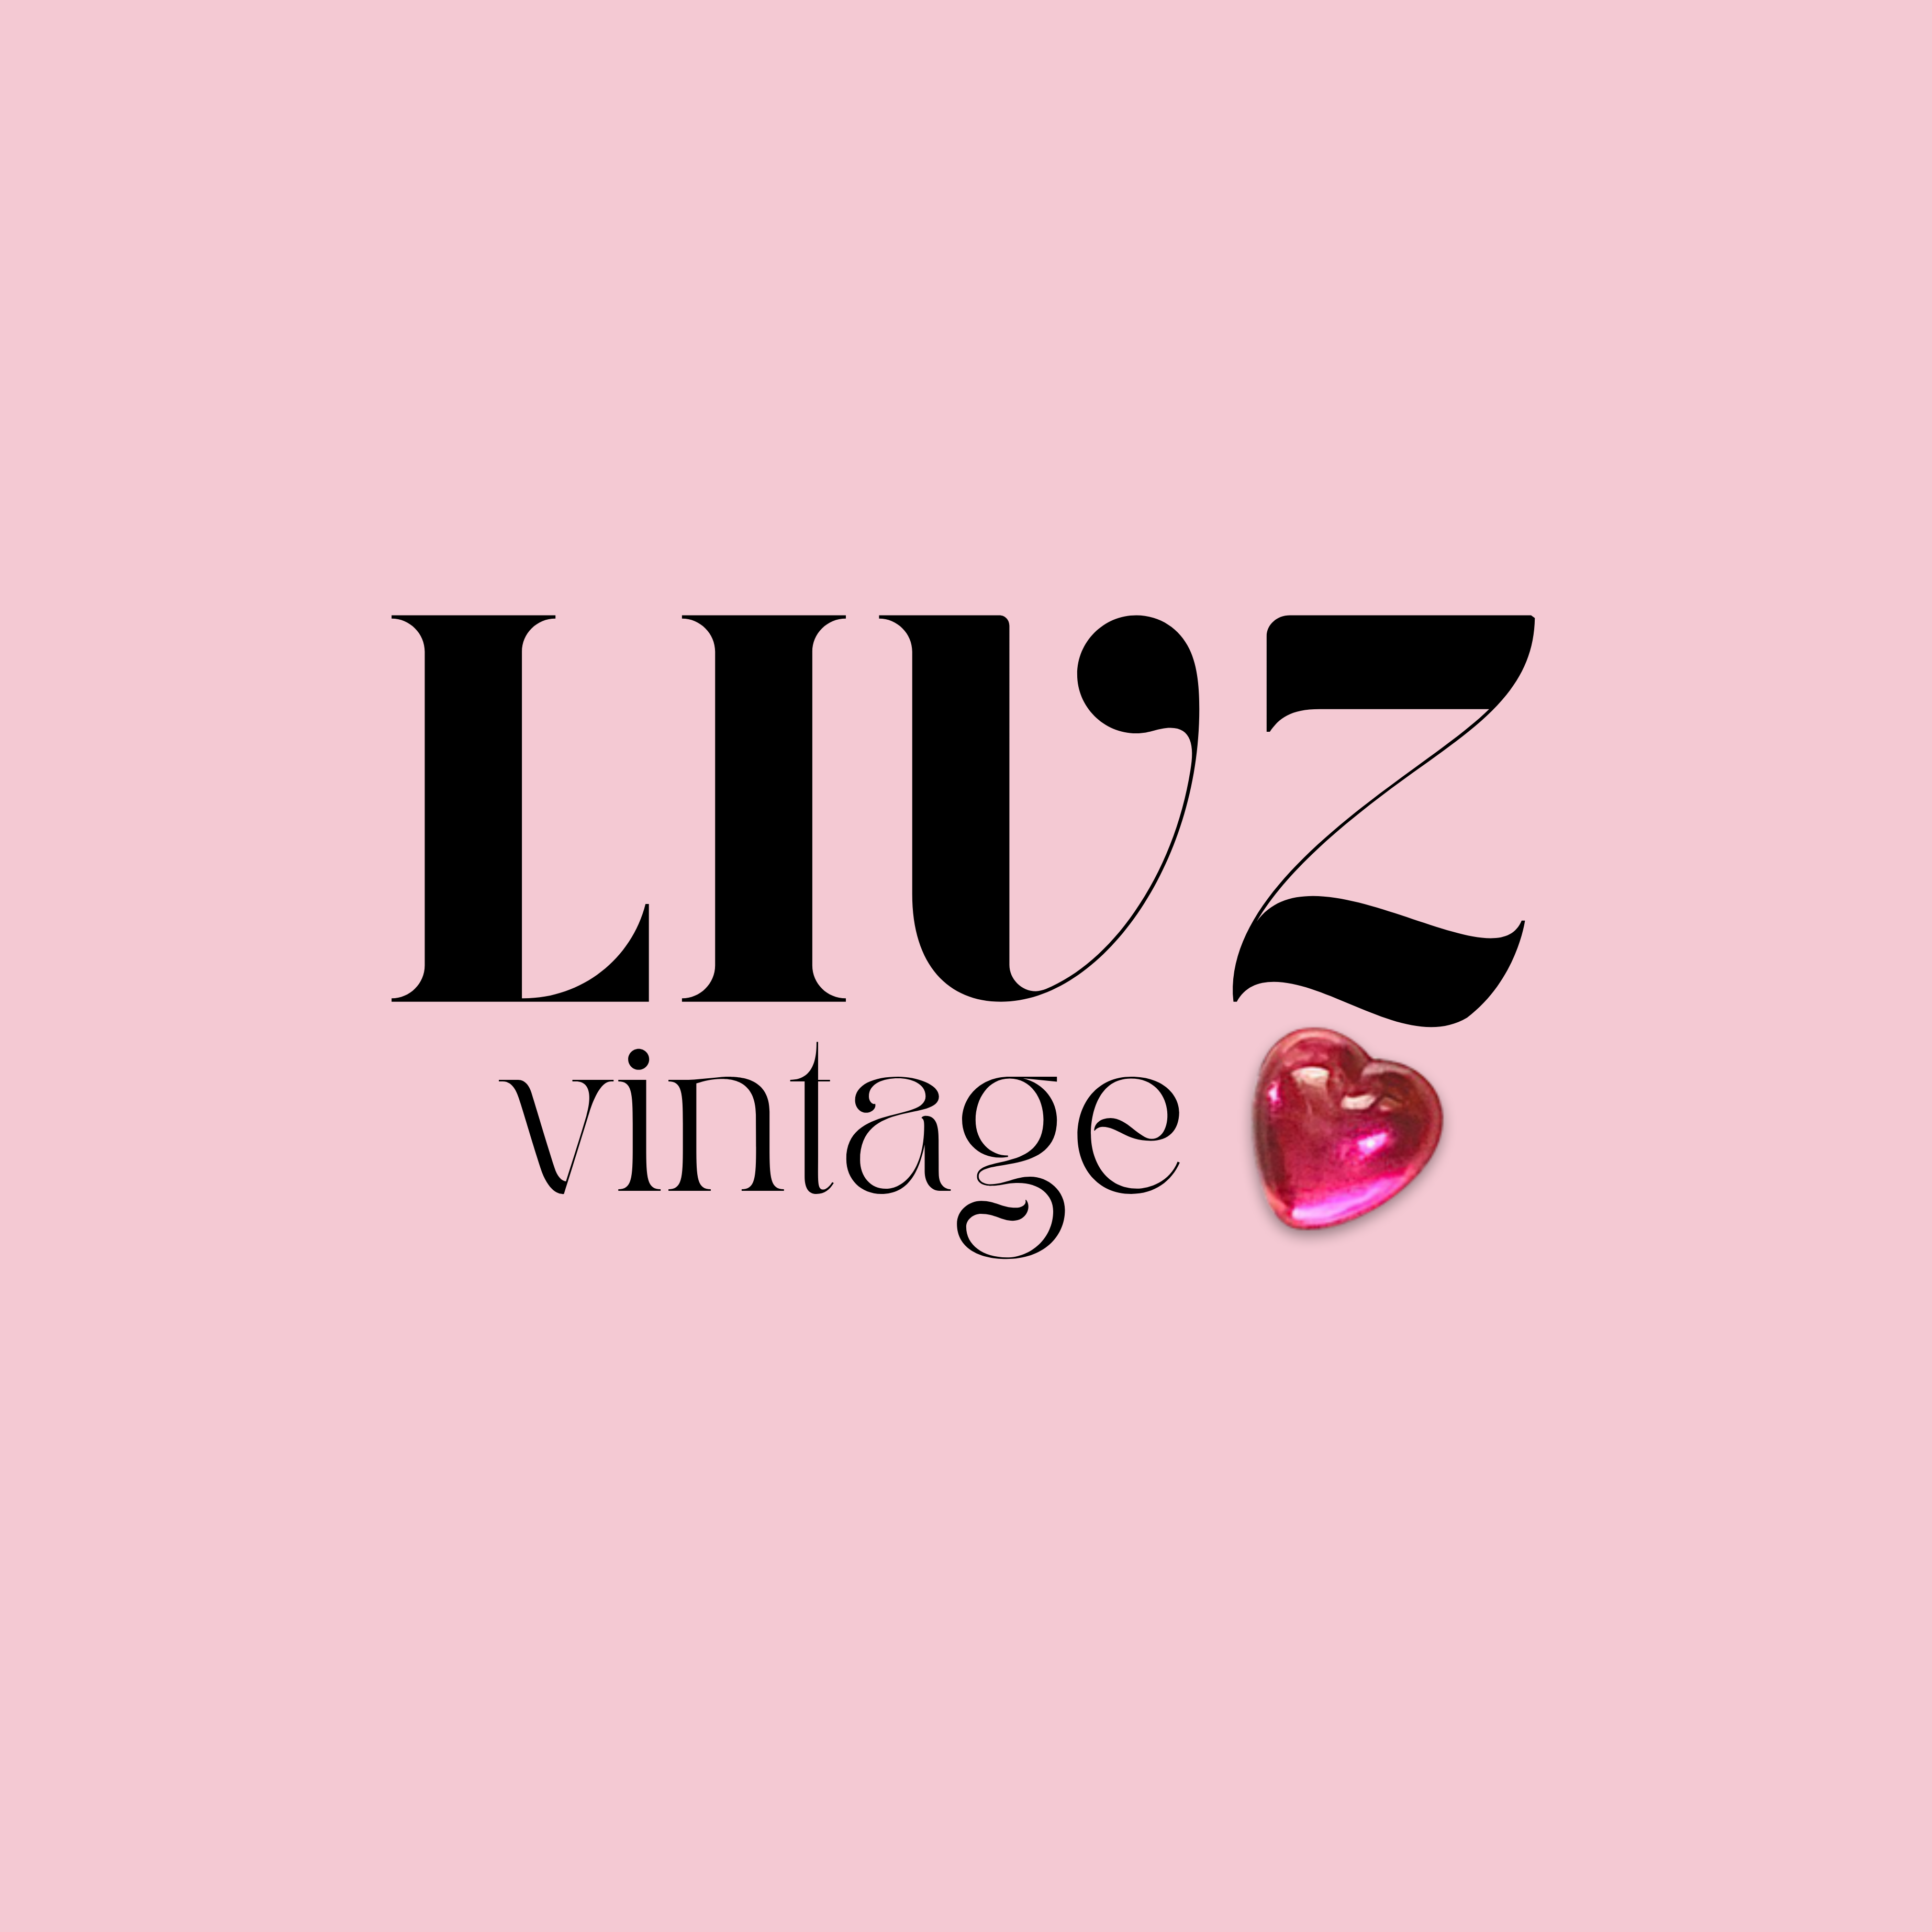 Livz Vintage